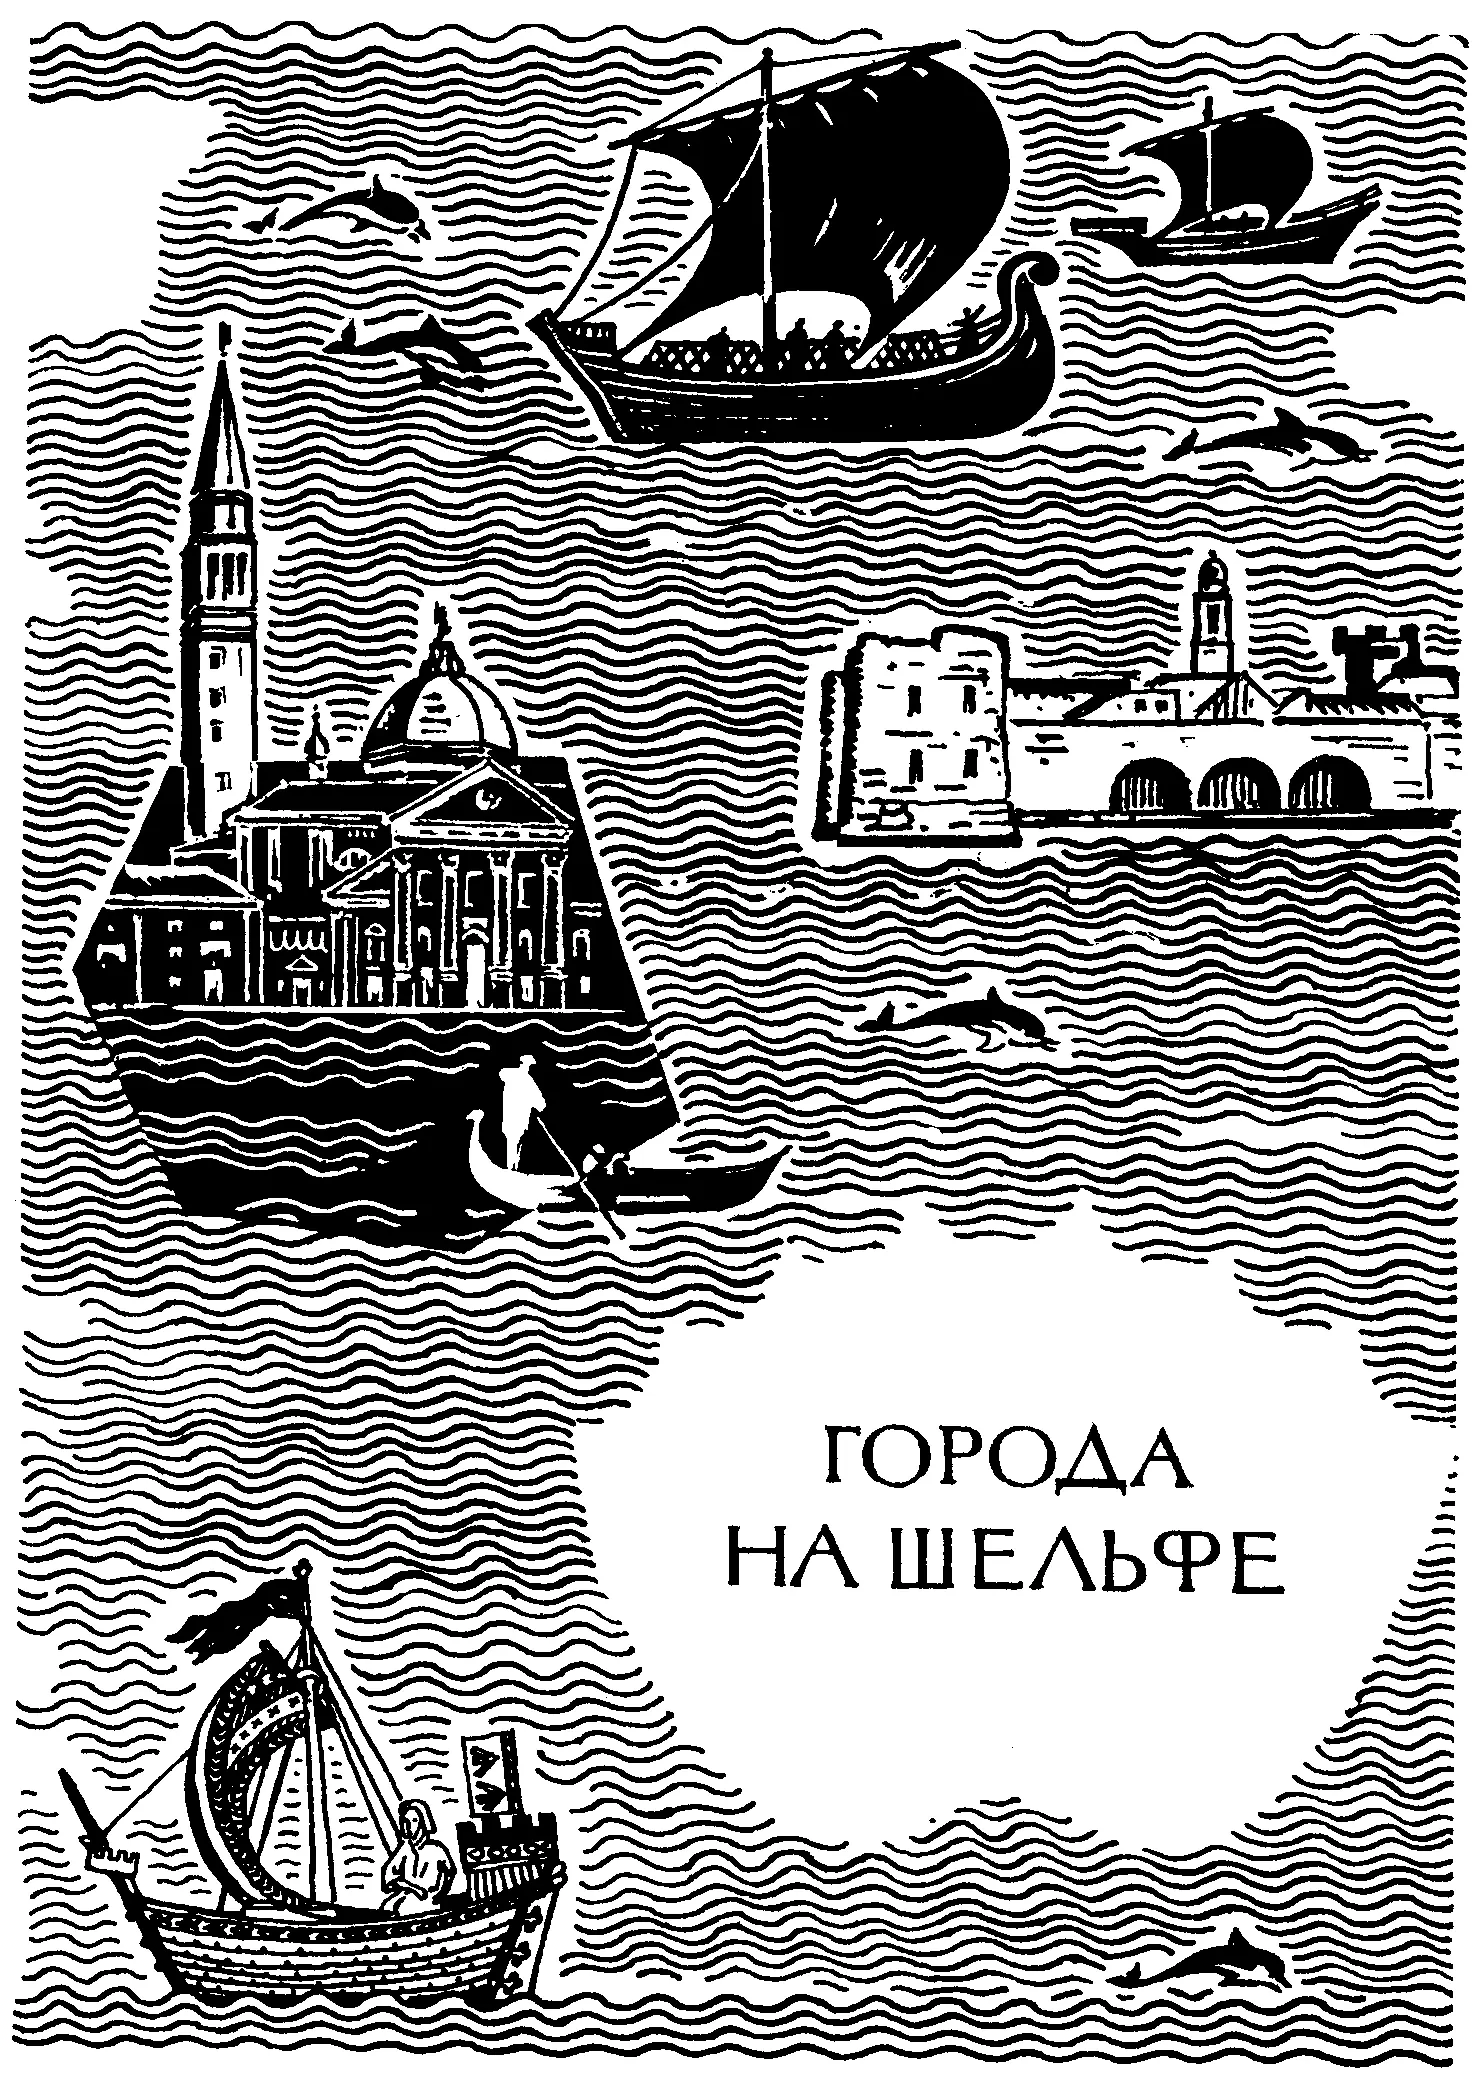 НА ПРЕДЫДУЩЕЙ СТРАНИЦЕ ИЗОБРАЖЕНО Древние финикийские корабли вверху - фото 17